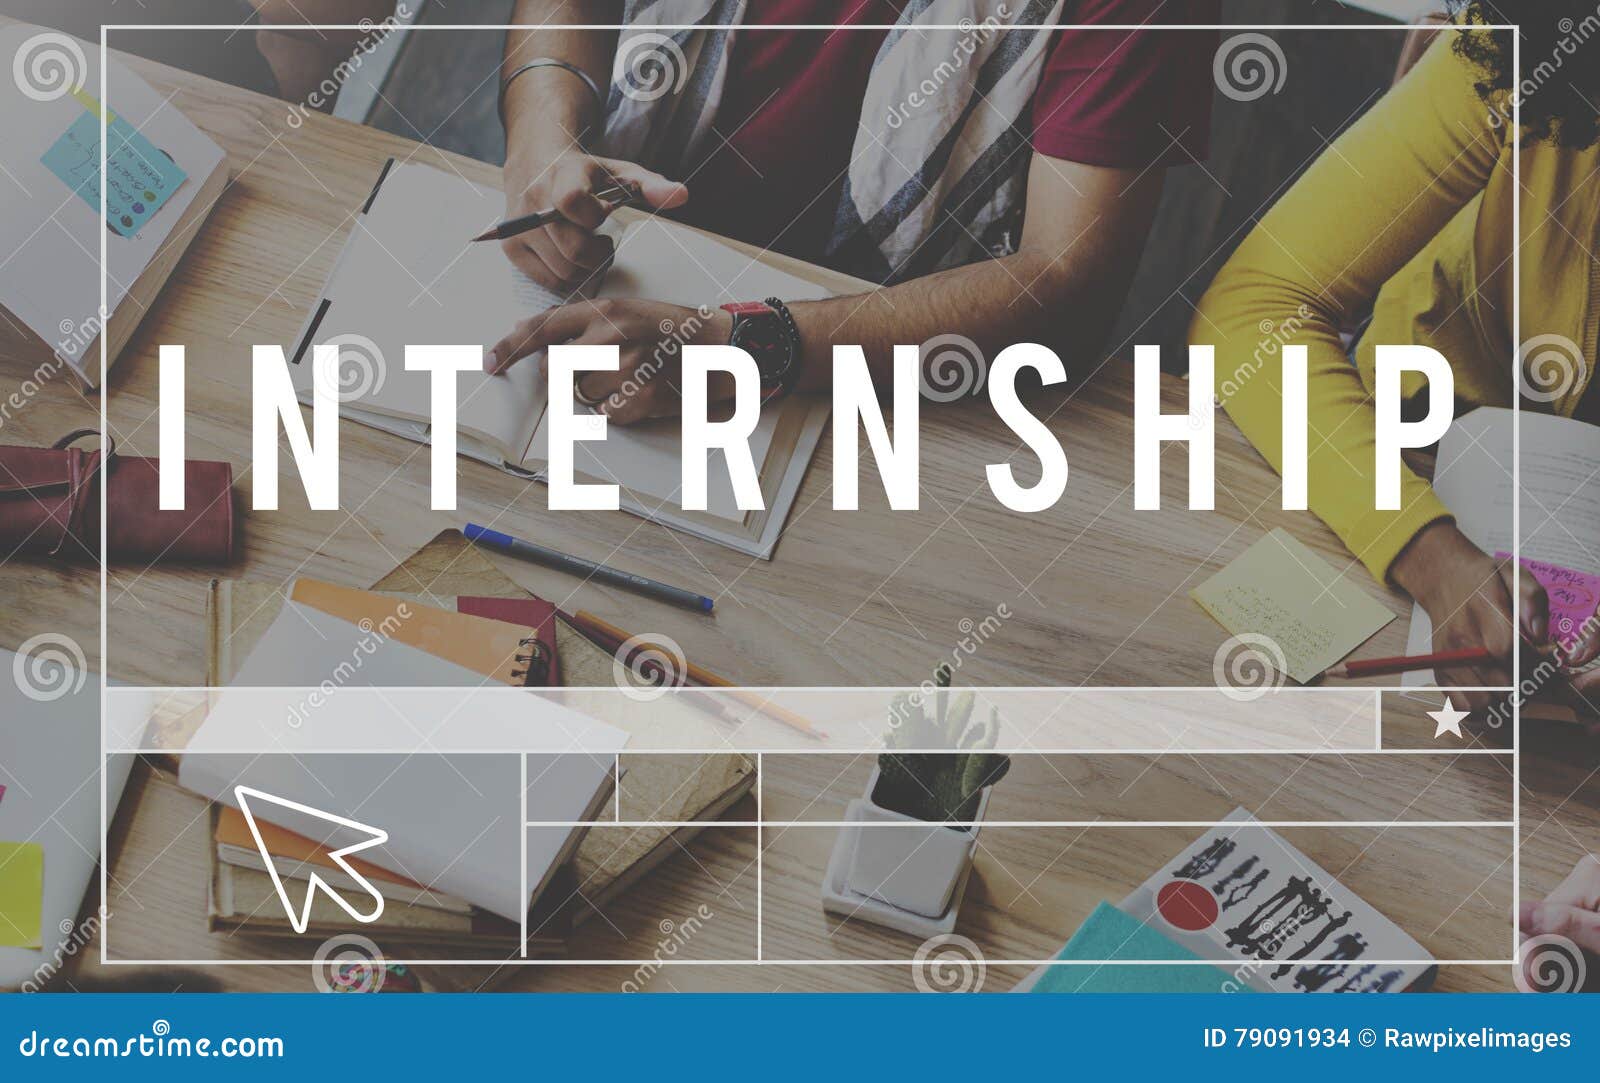 internship appretenceship management trainee concept